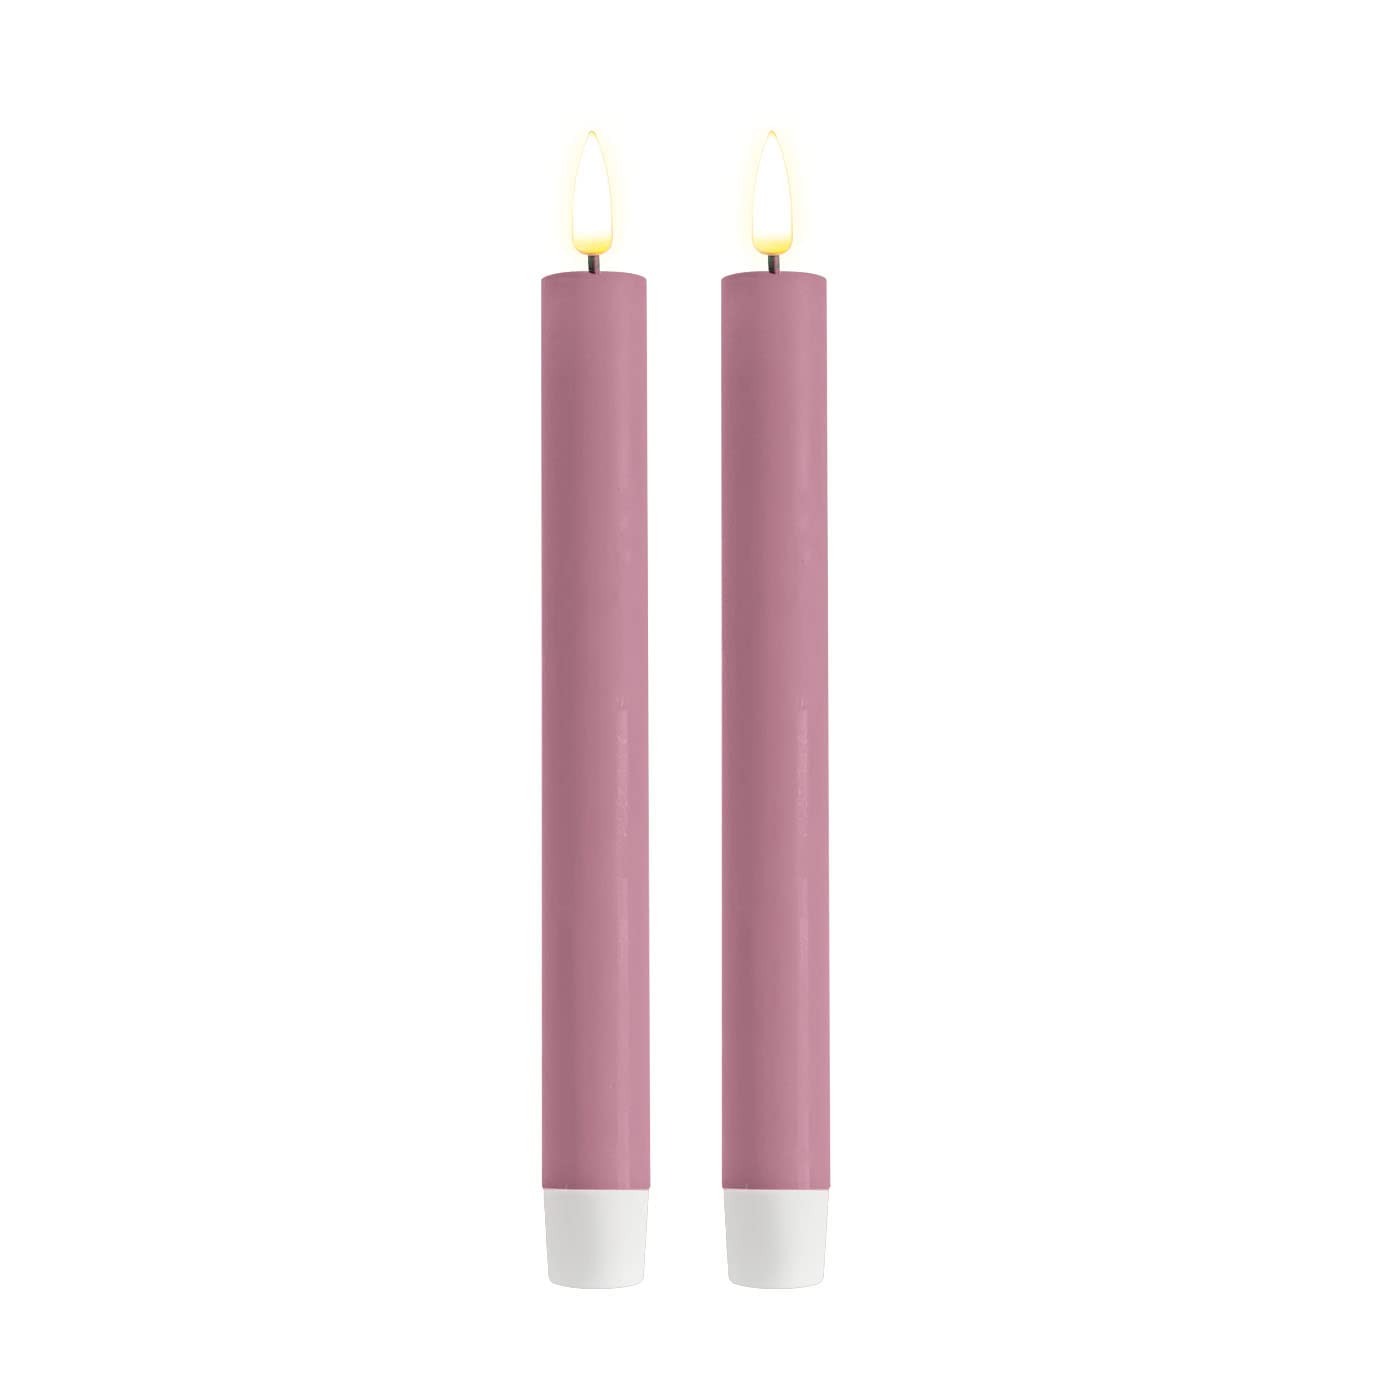 ReWu LED Kerze Deluxe Homeart, Indoor LED-Kerze mit realistischer Flamme auf einem Echtwachsspiegel, warmweißes Licht - Lavendel Stabkerze 24 cm